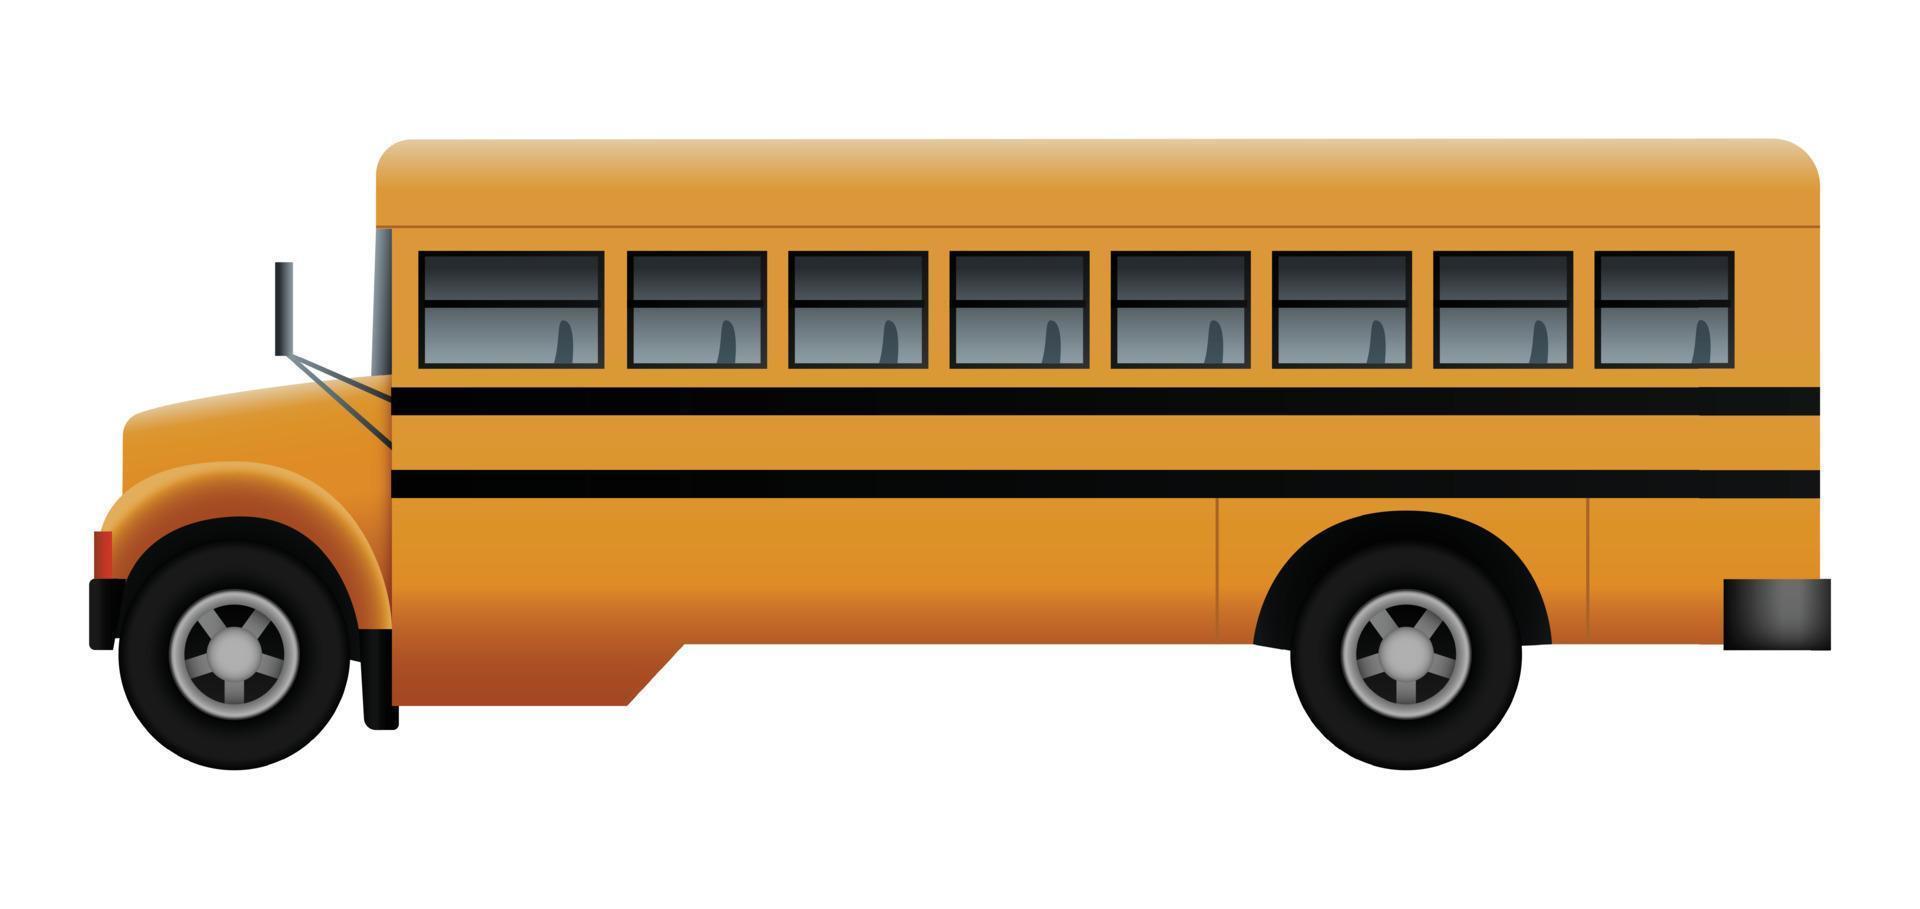 lado de la maqueta del autobús de la vieja escuela, estilo realista vector